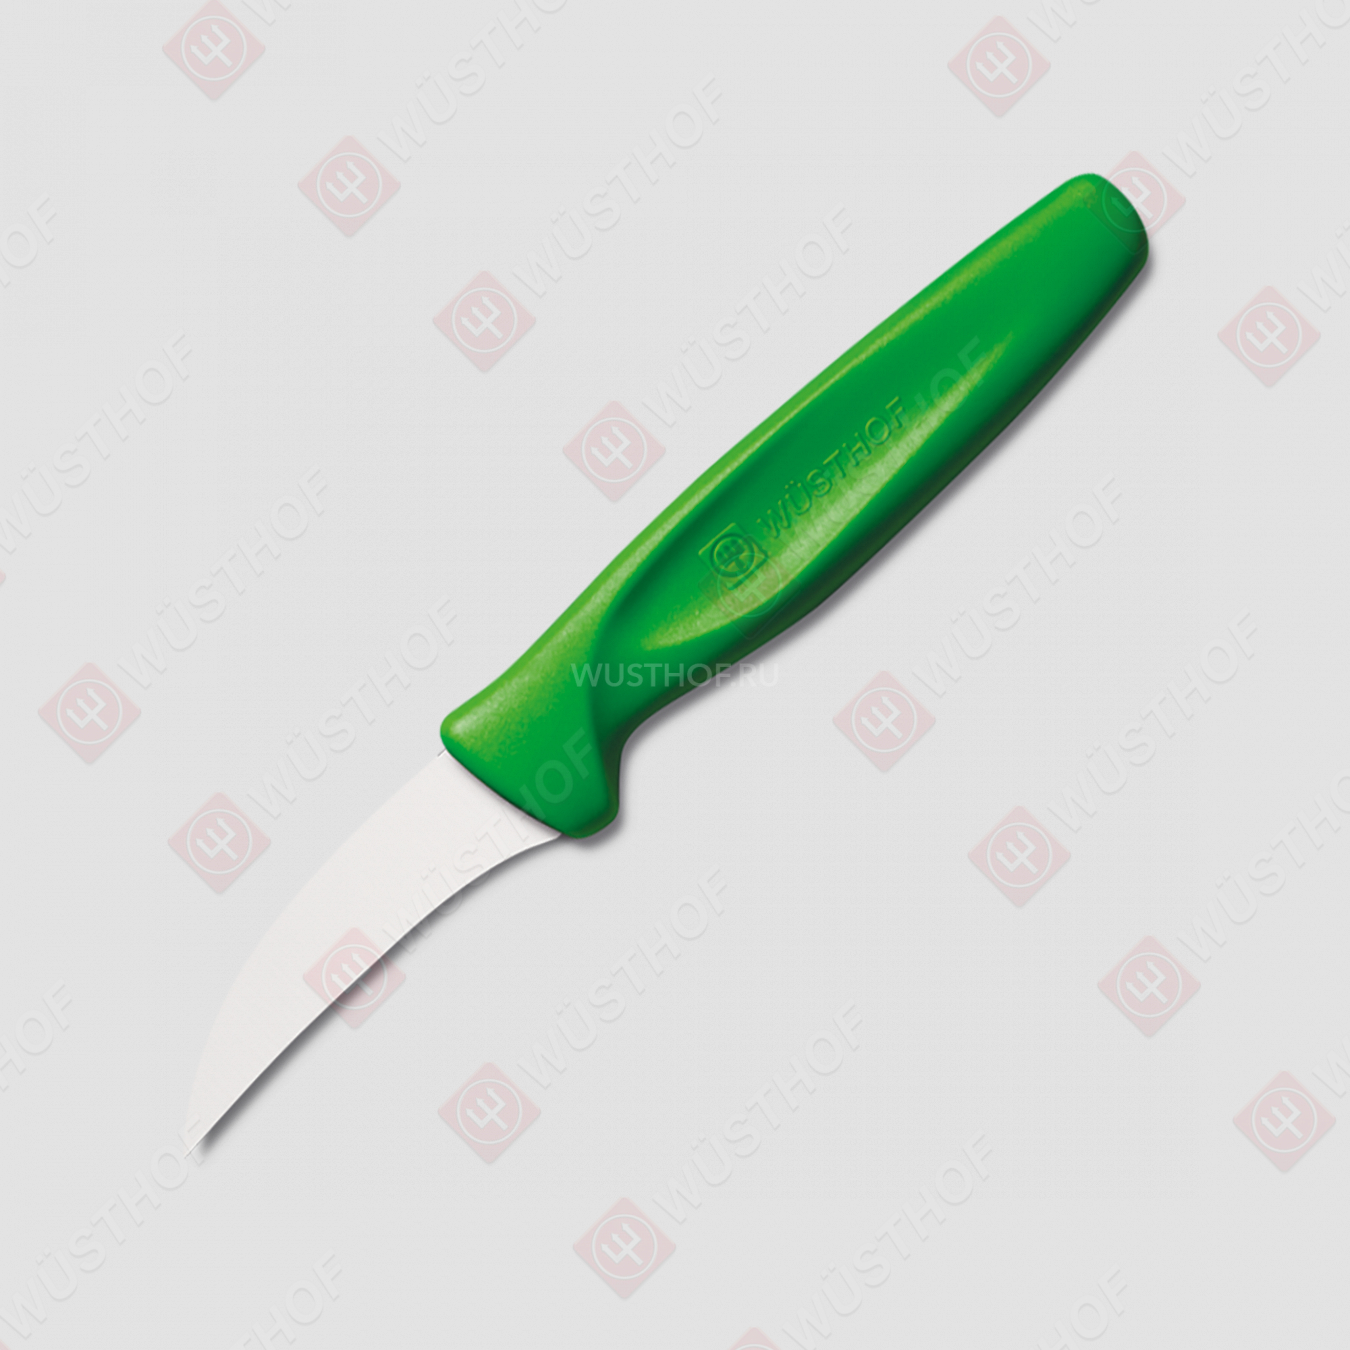 Нож кухонный для чистки овощей 6 см, рукоять зеленая, серия Sharp Fresh Colourful, WUESTHOF, Золинген, Германия